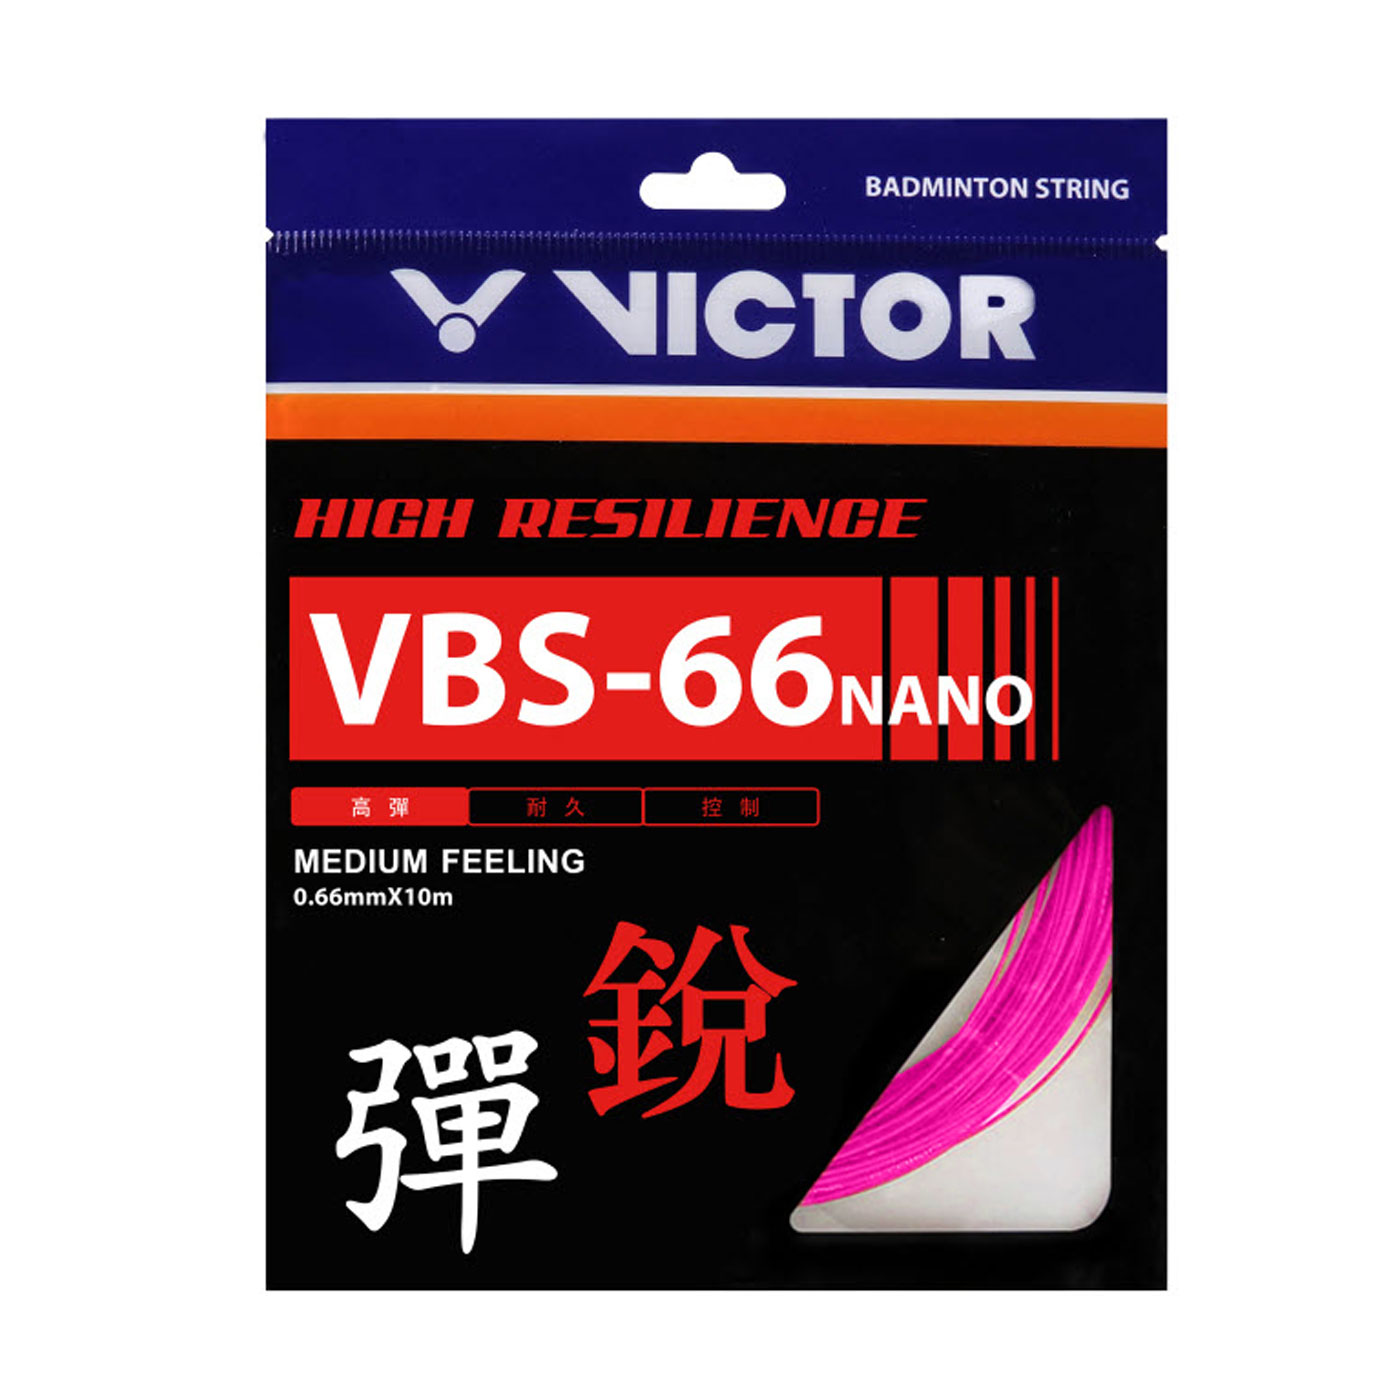 VICTOR 特定-高彈羽拍線-銳 VBS-66N-G - 桃紅